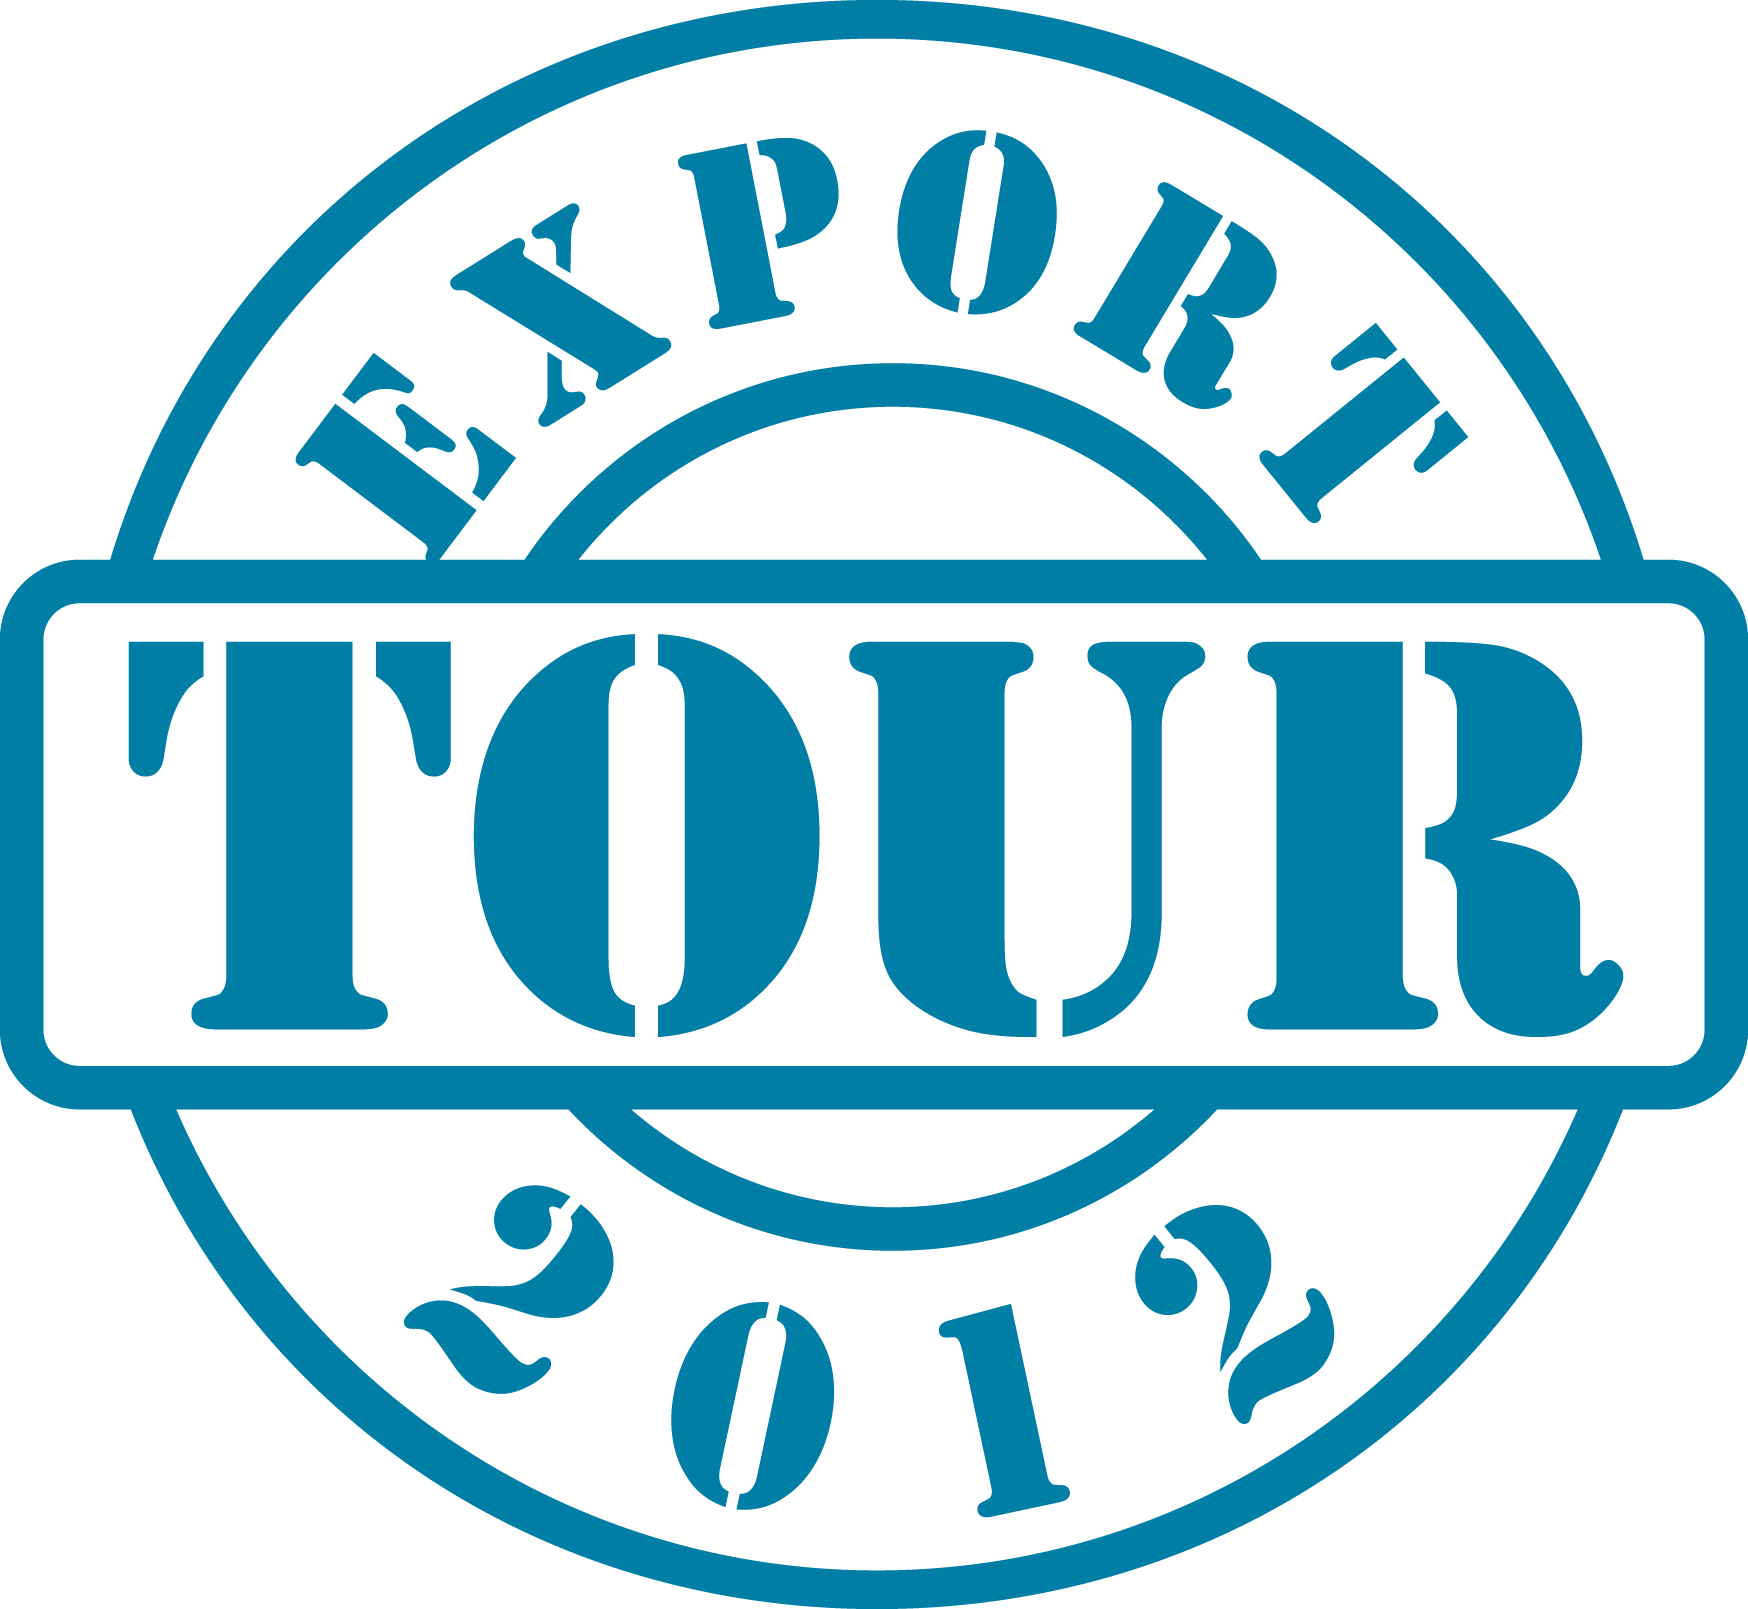 Export Tour 2012